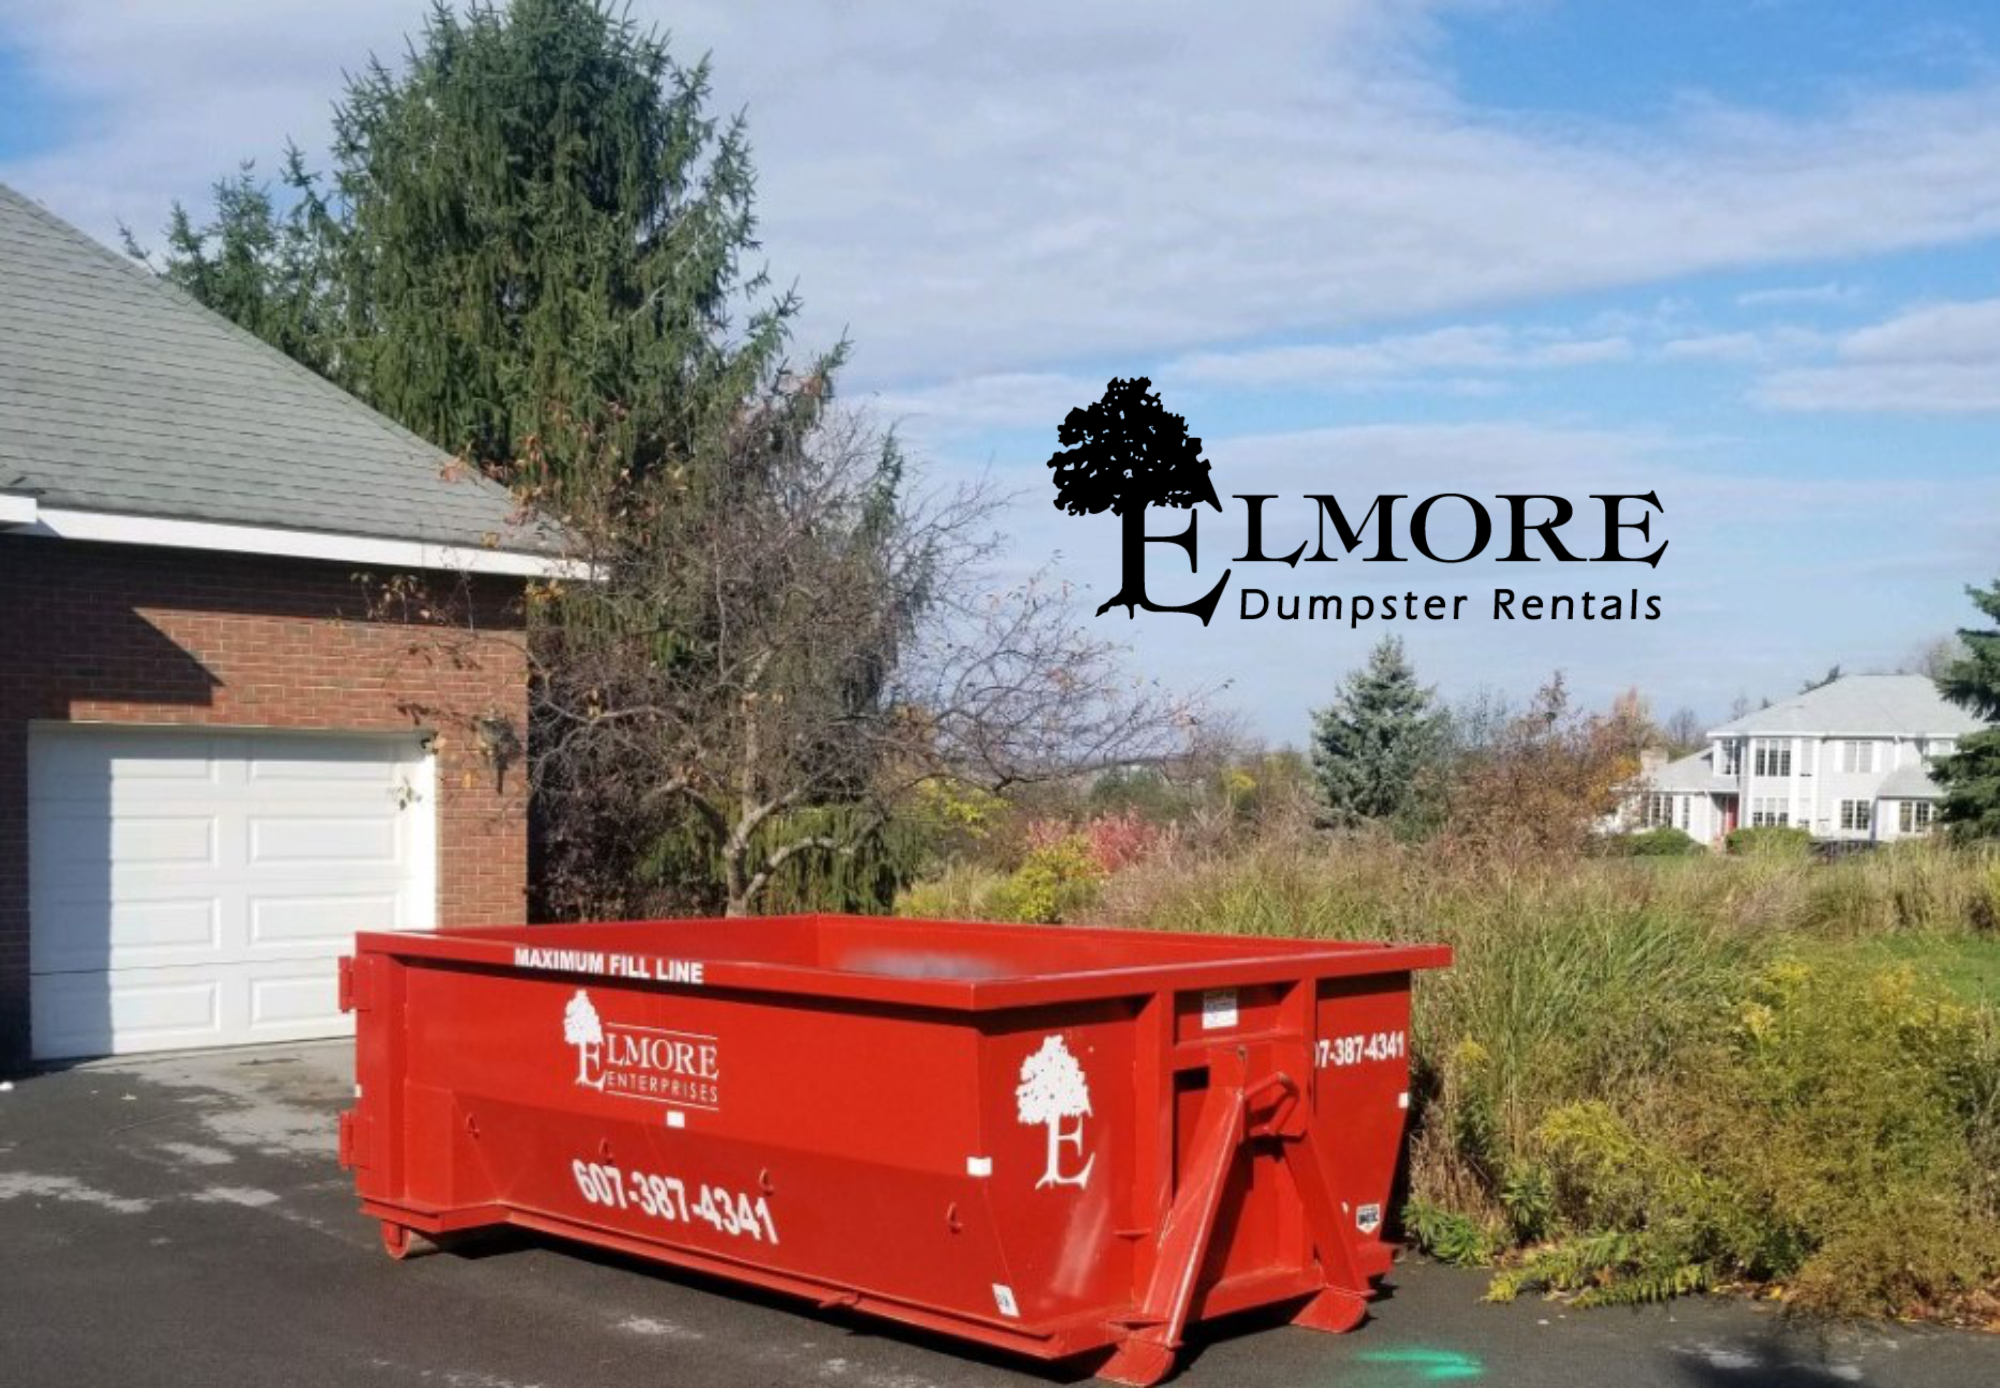 Dumpster Rental Elmore Dumpster Rentals Montour NY